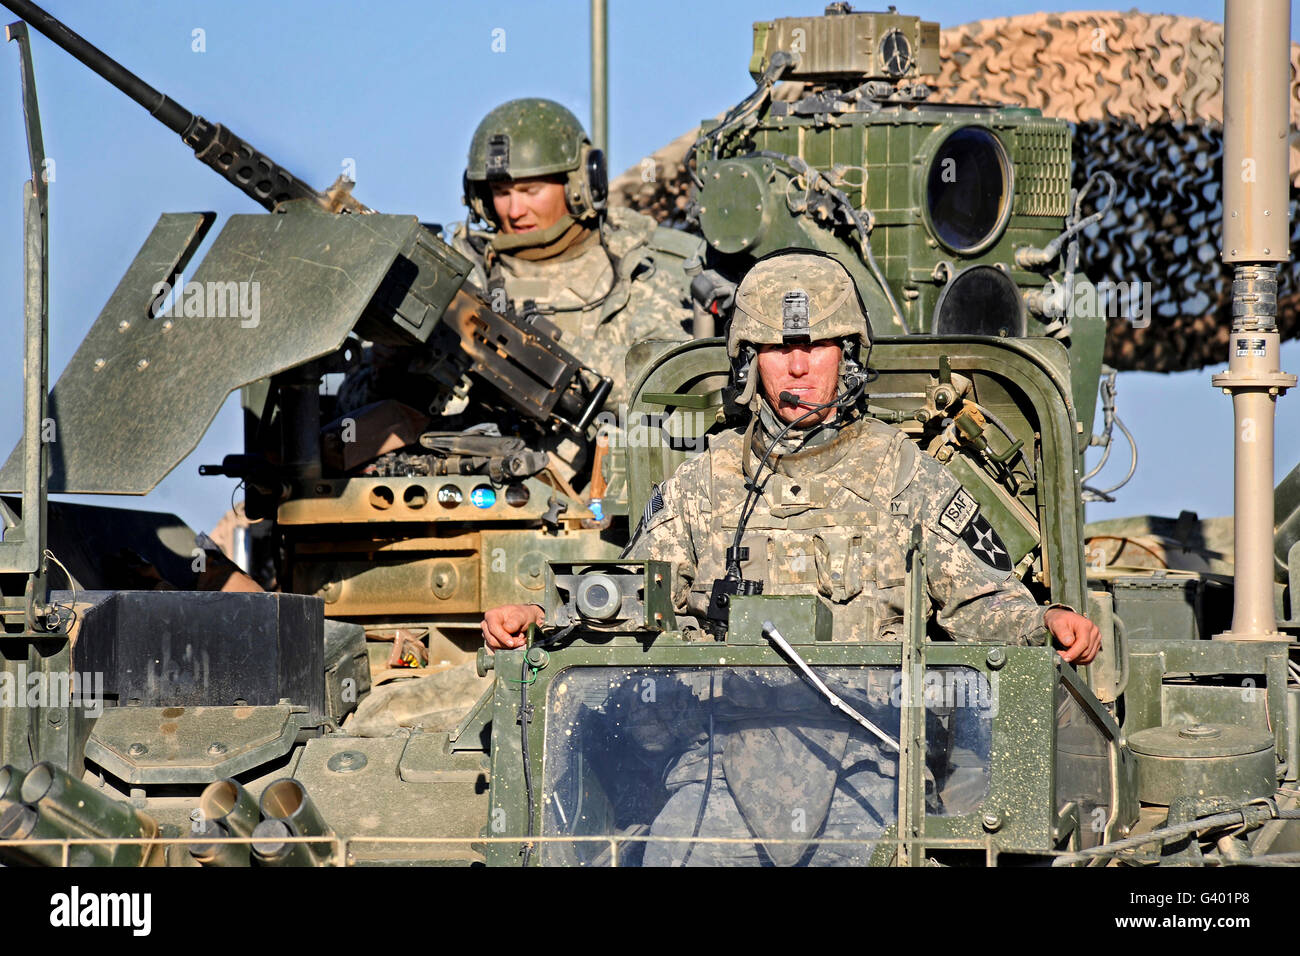 Les soldats de l'armée américaine en Afghanistan de patrouille dans un véhicule blindé Stryker. Banque D'Images